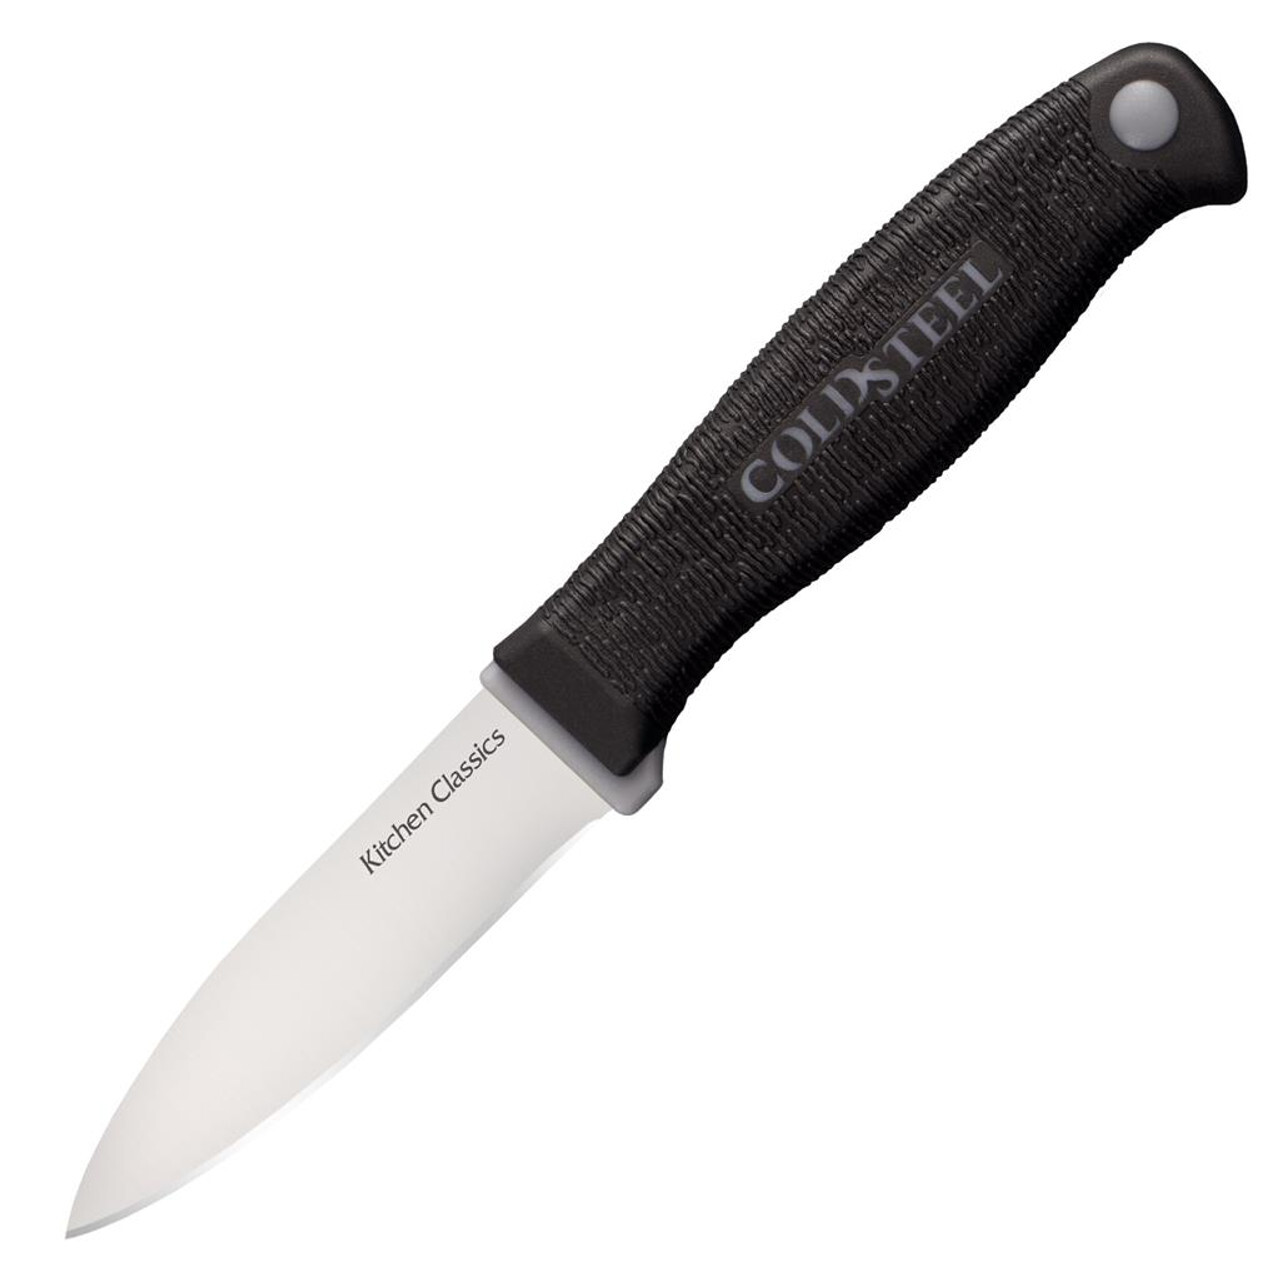 Нож овощной Paring knife (Kitchen Classics), 7.5 см нож овощной paring knife kitchen classics 7 5 см